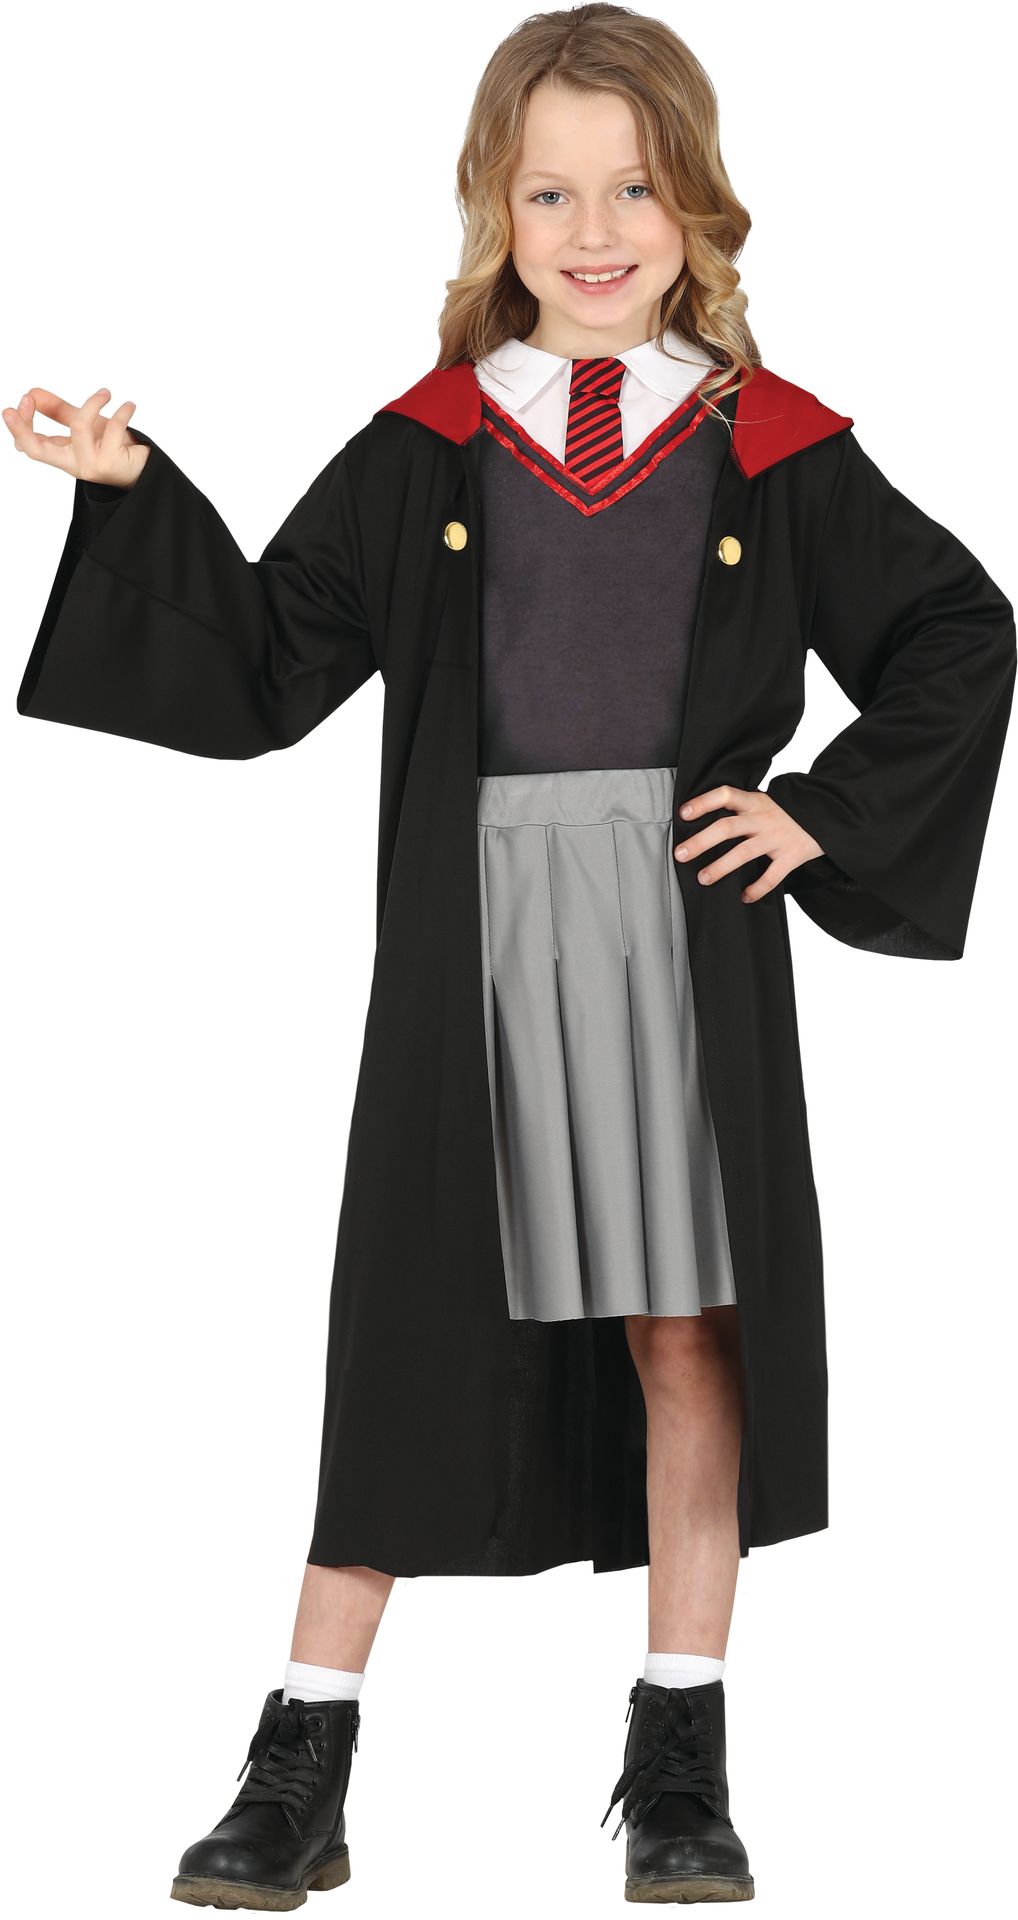 Harry Potter griffioendor kostuum meisje